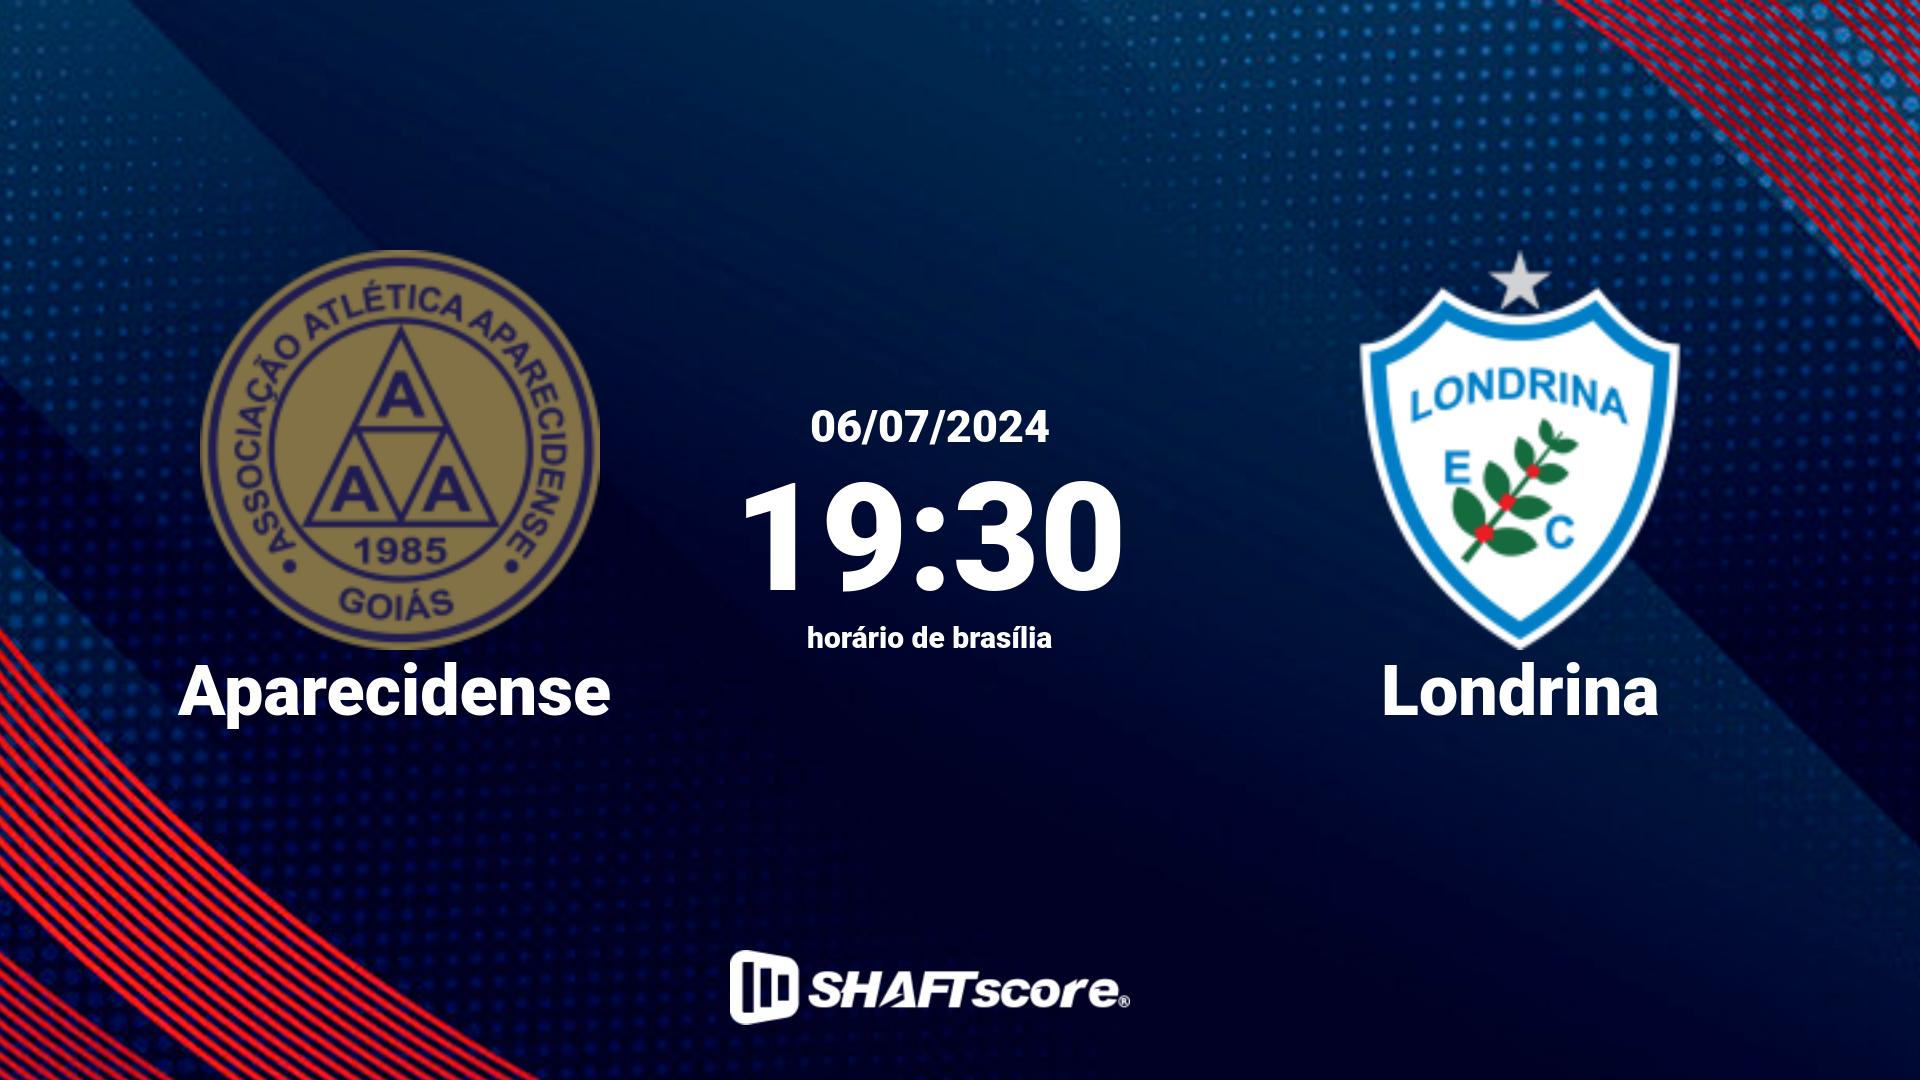 Estatísticas do jogo Aparecidense vs Londrina 06.07 19:30